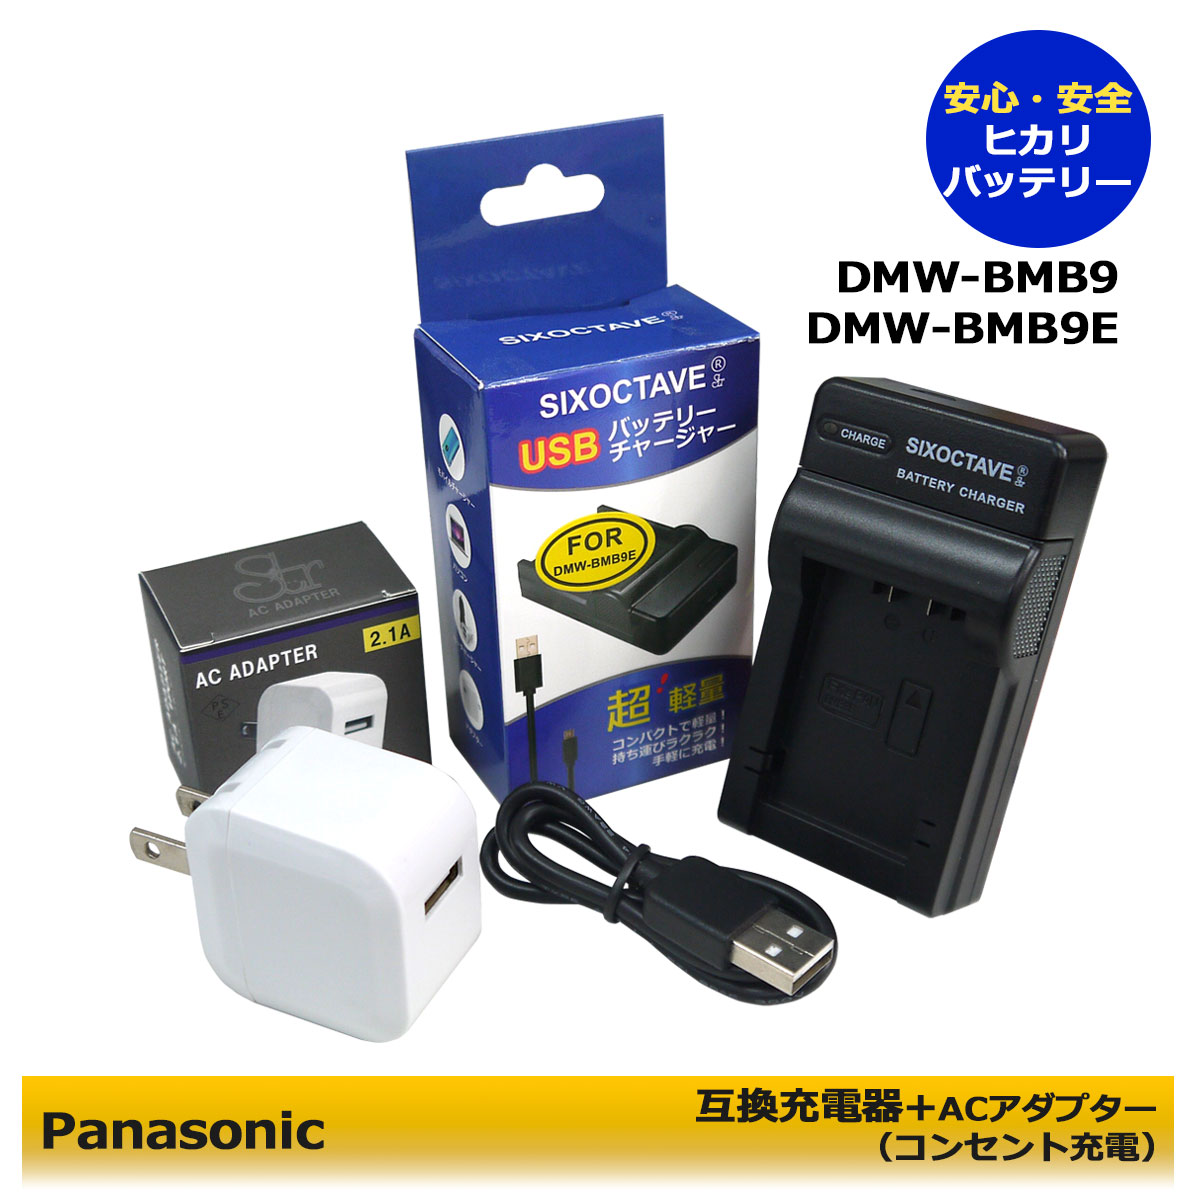 ★コンセント充電可能★【あす楽対応】Panasonic DMW-BMB9 互換充電器 USBチャージャー 1個とACアダプター1個の2点セット DMC-FZ45 / DMC-FZ40 / DMC-FZ48 / DMC-FZ100 / DMC-FZ150 / DMC-FZ70 / DC-FZ85 /DMW-BMB9/DMW-BMB9E/DMW-BMB9GK (A2.1)